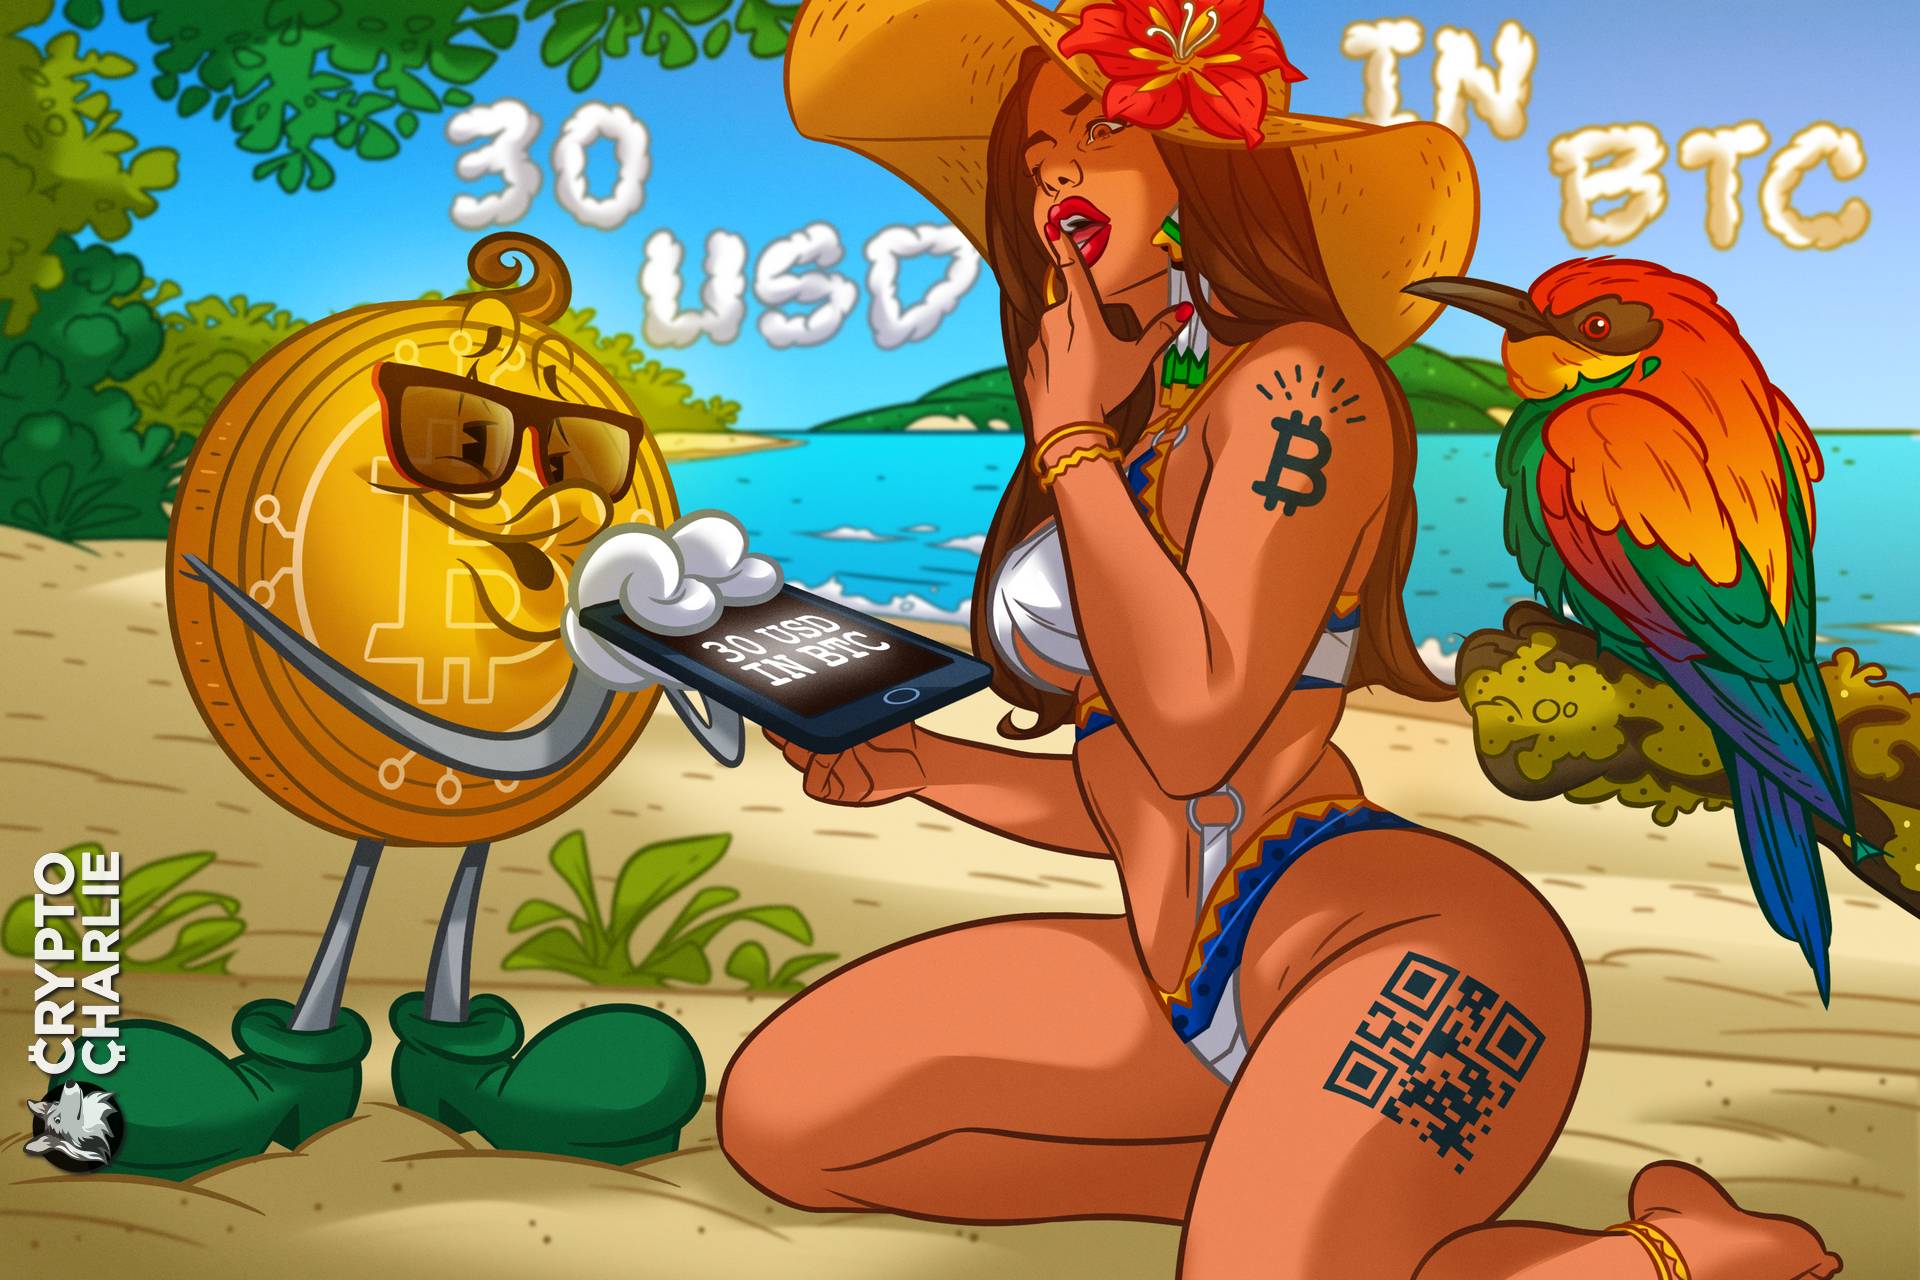 Salvador věnuje všem svým dospělým občanům 30 dolarů v bitcoinu